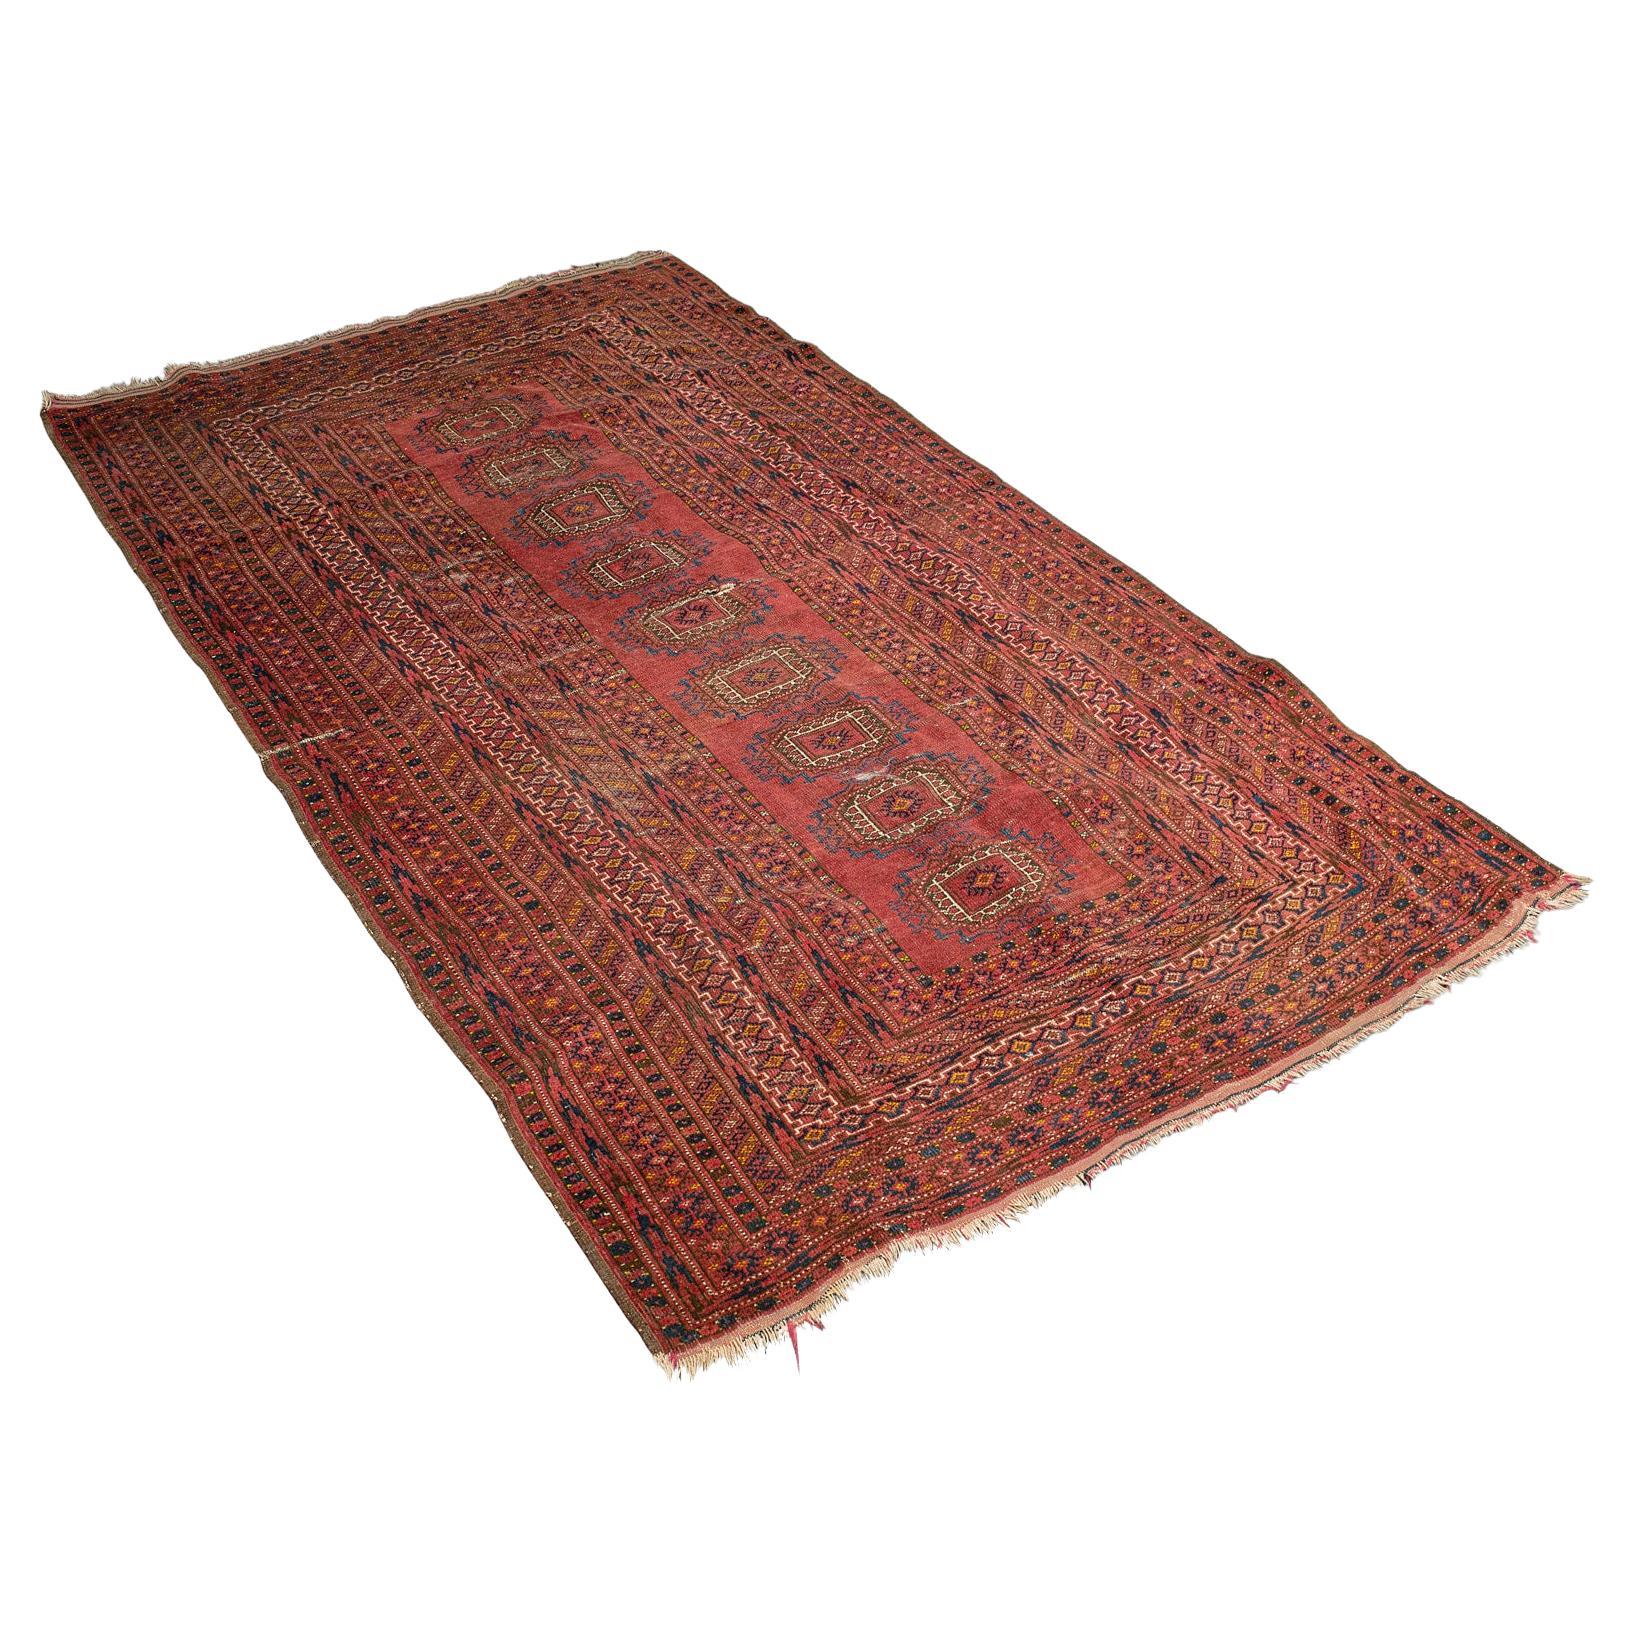 Antiker türkischer Teppich aus dem Nahen Osten, gewebter Dozar, dekorativer Teppich, um 1920